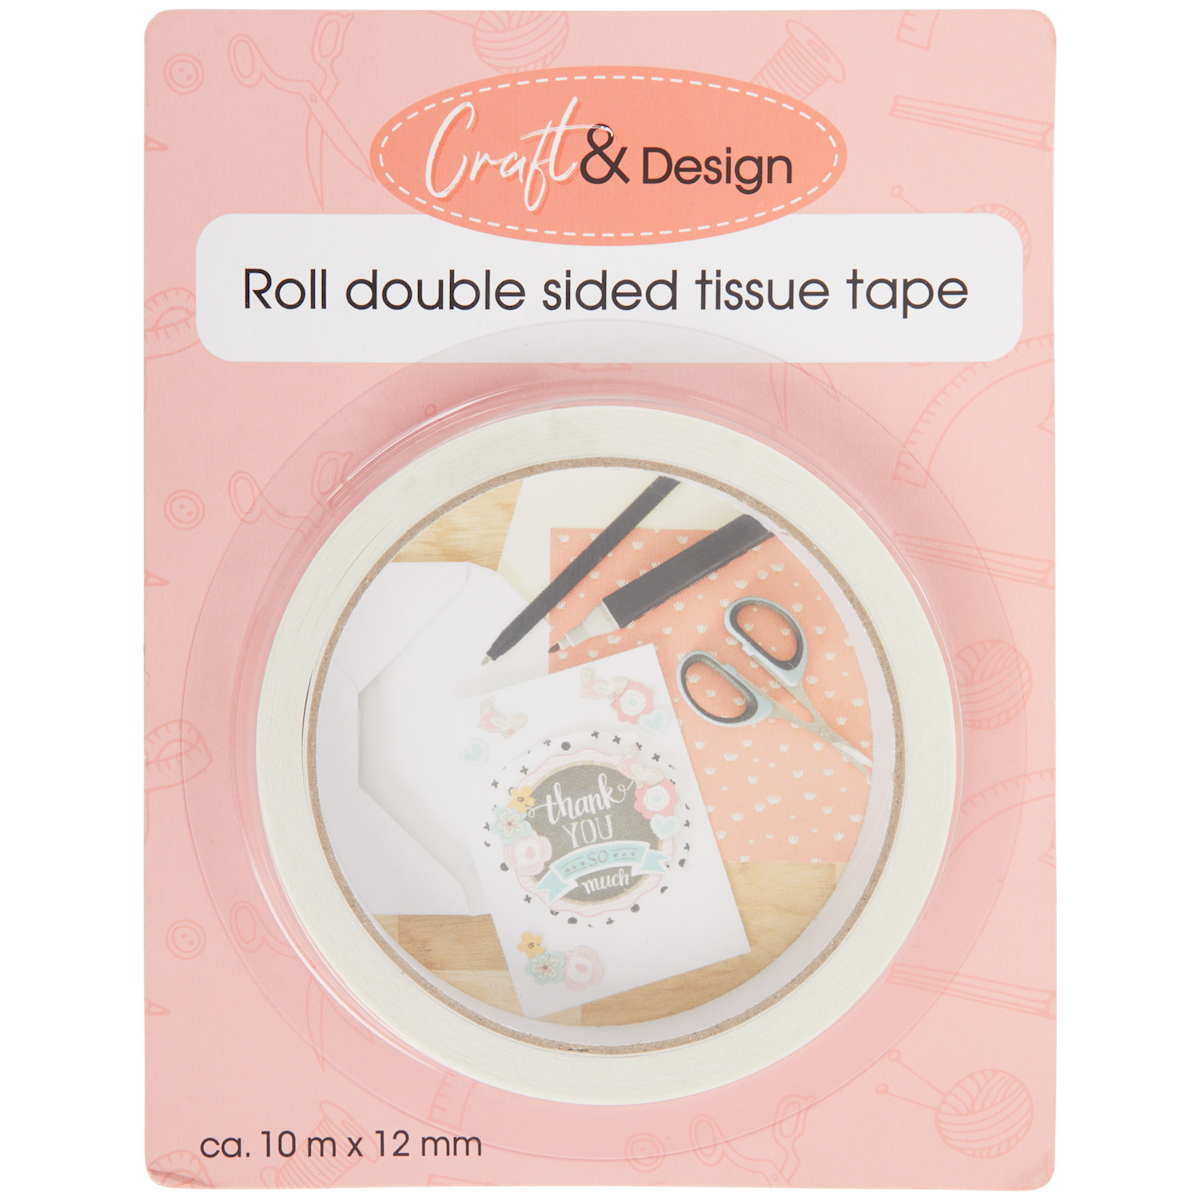 Craft & Design dubbelzijdig tissuetape